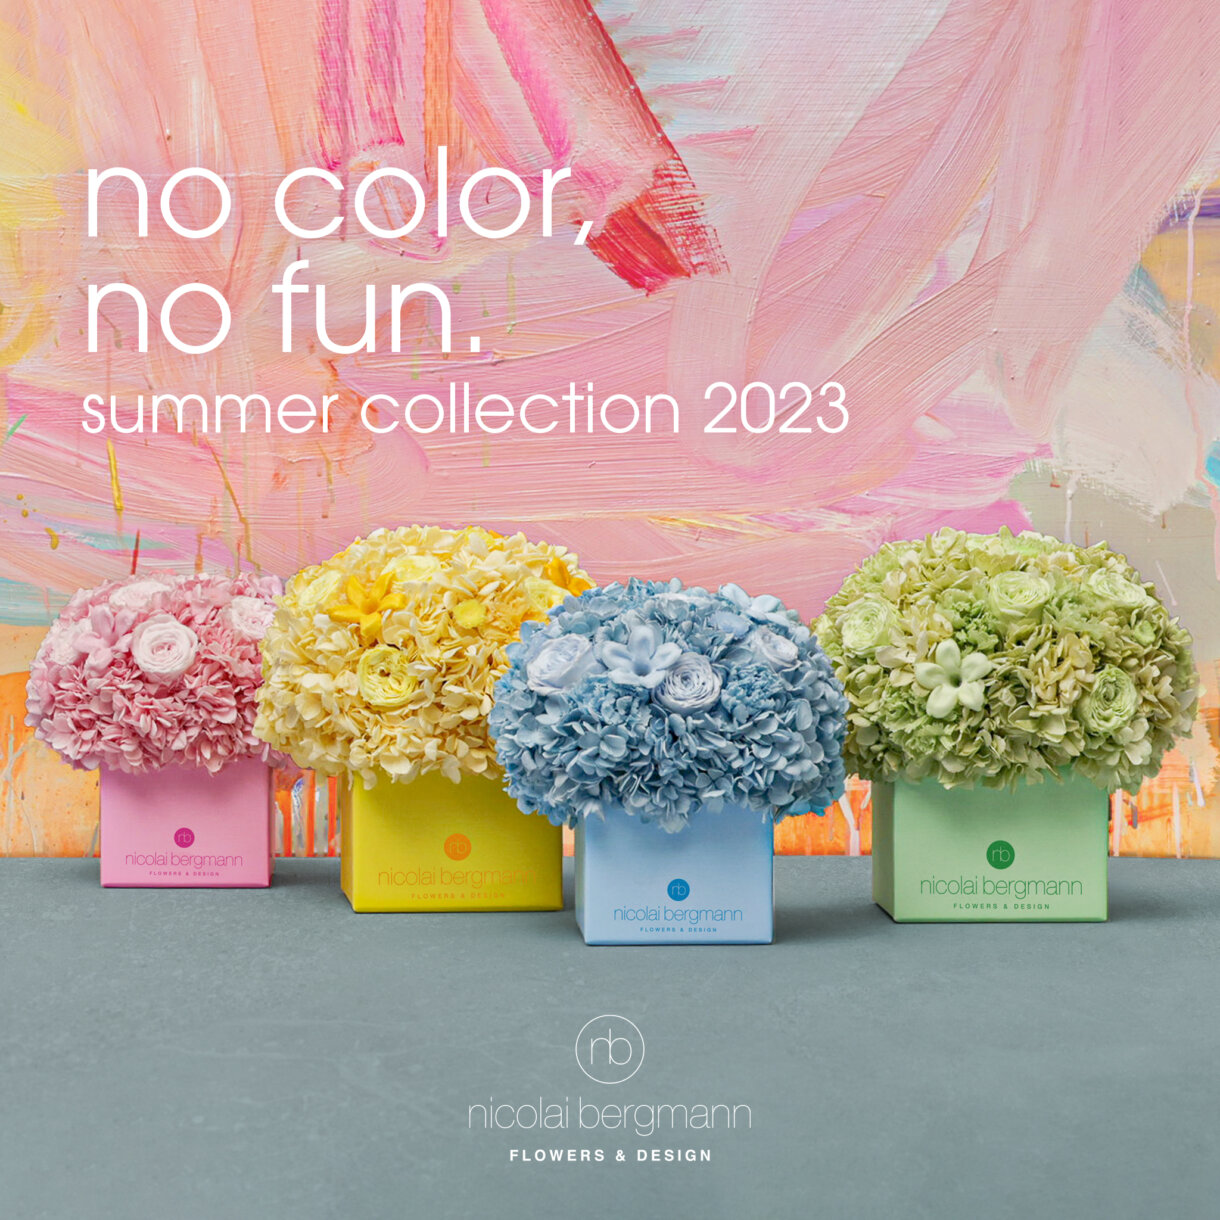 “No Color, No Fun.” Summer Collection 2023